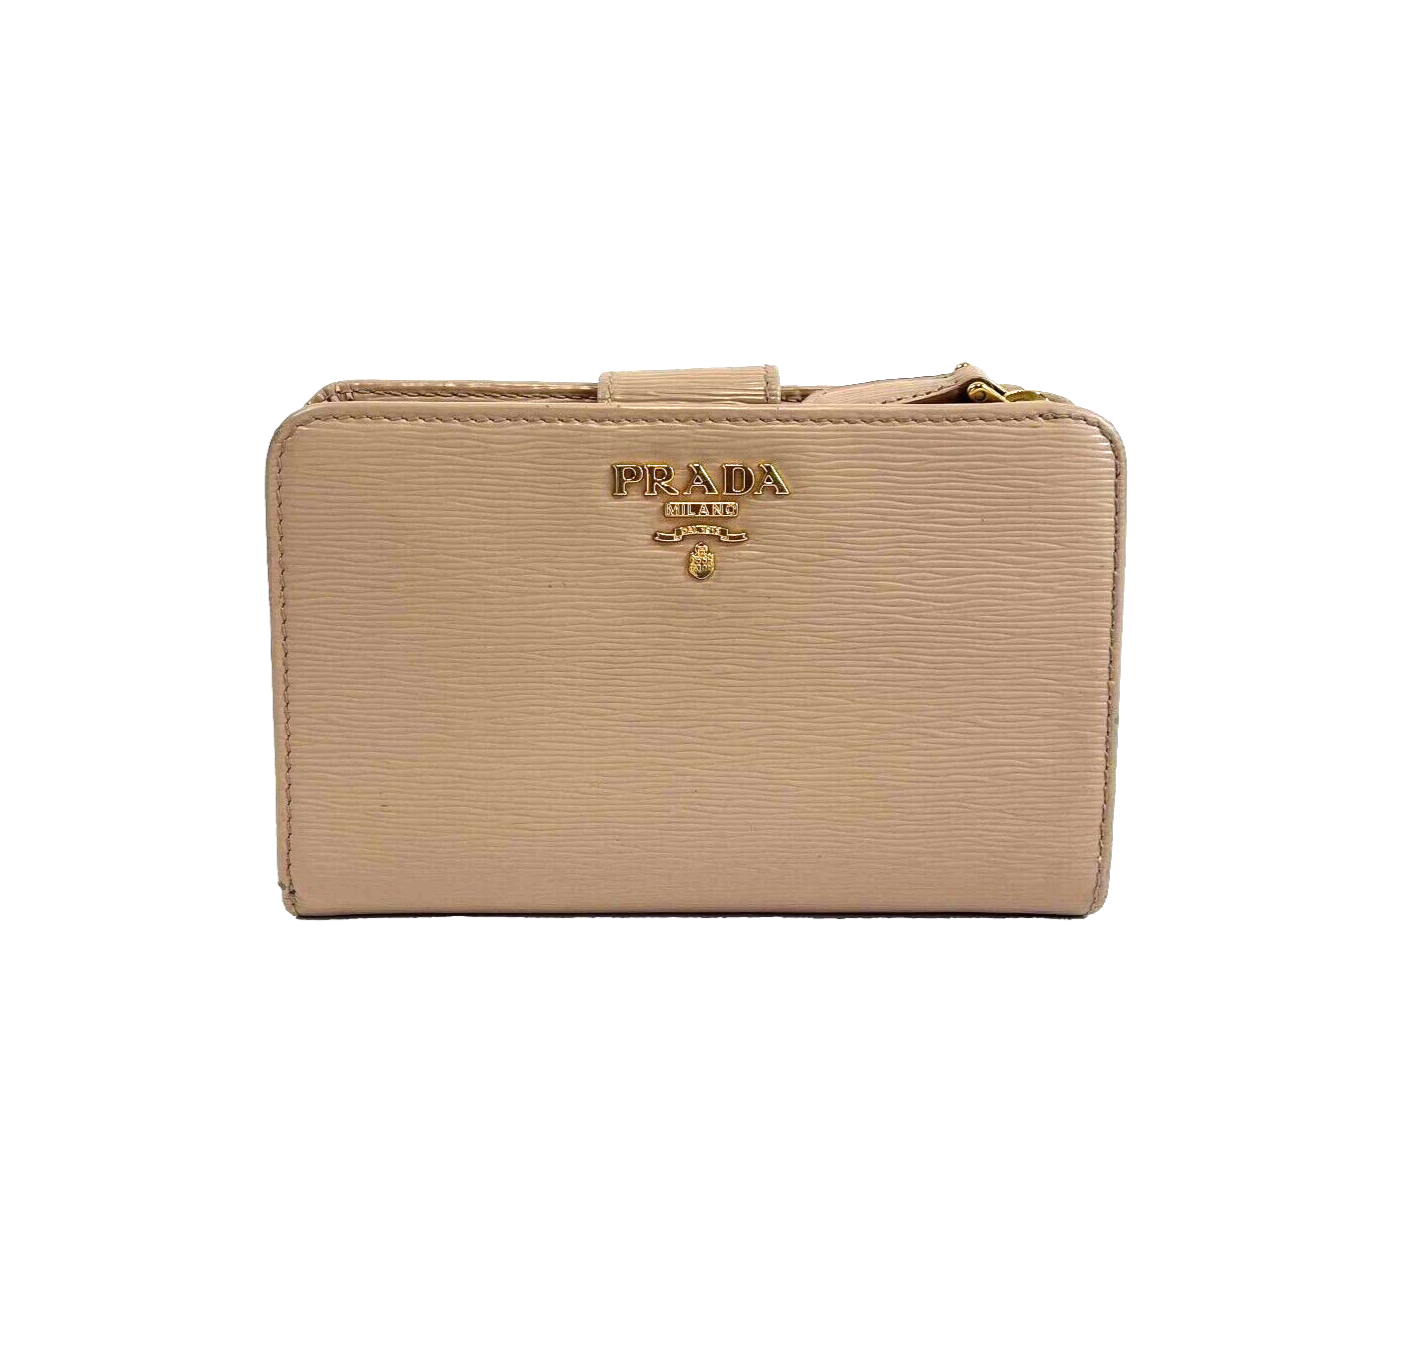 Buy Prada Portafoglio Pattina Cammeo and Orchidea Saffiano Multic Leather  Wallet 1MH523 at Amazon.in